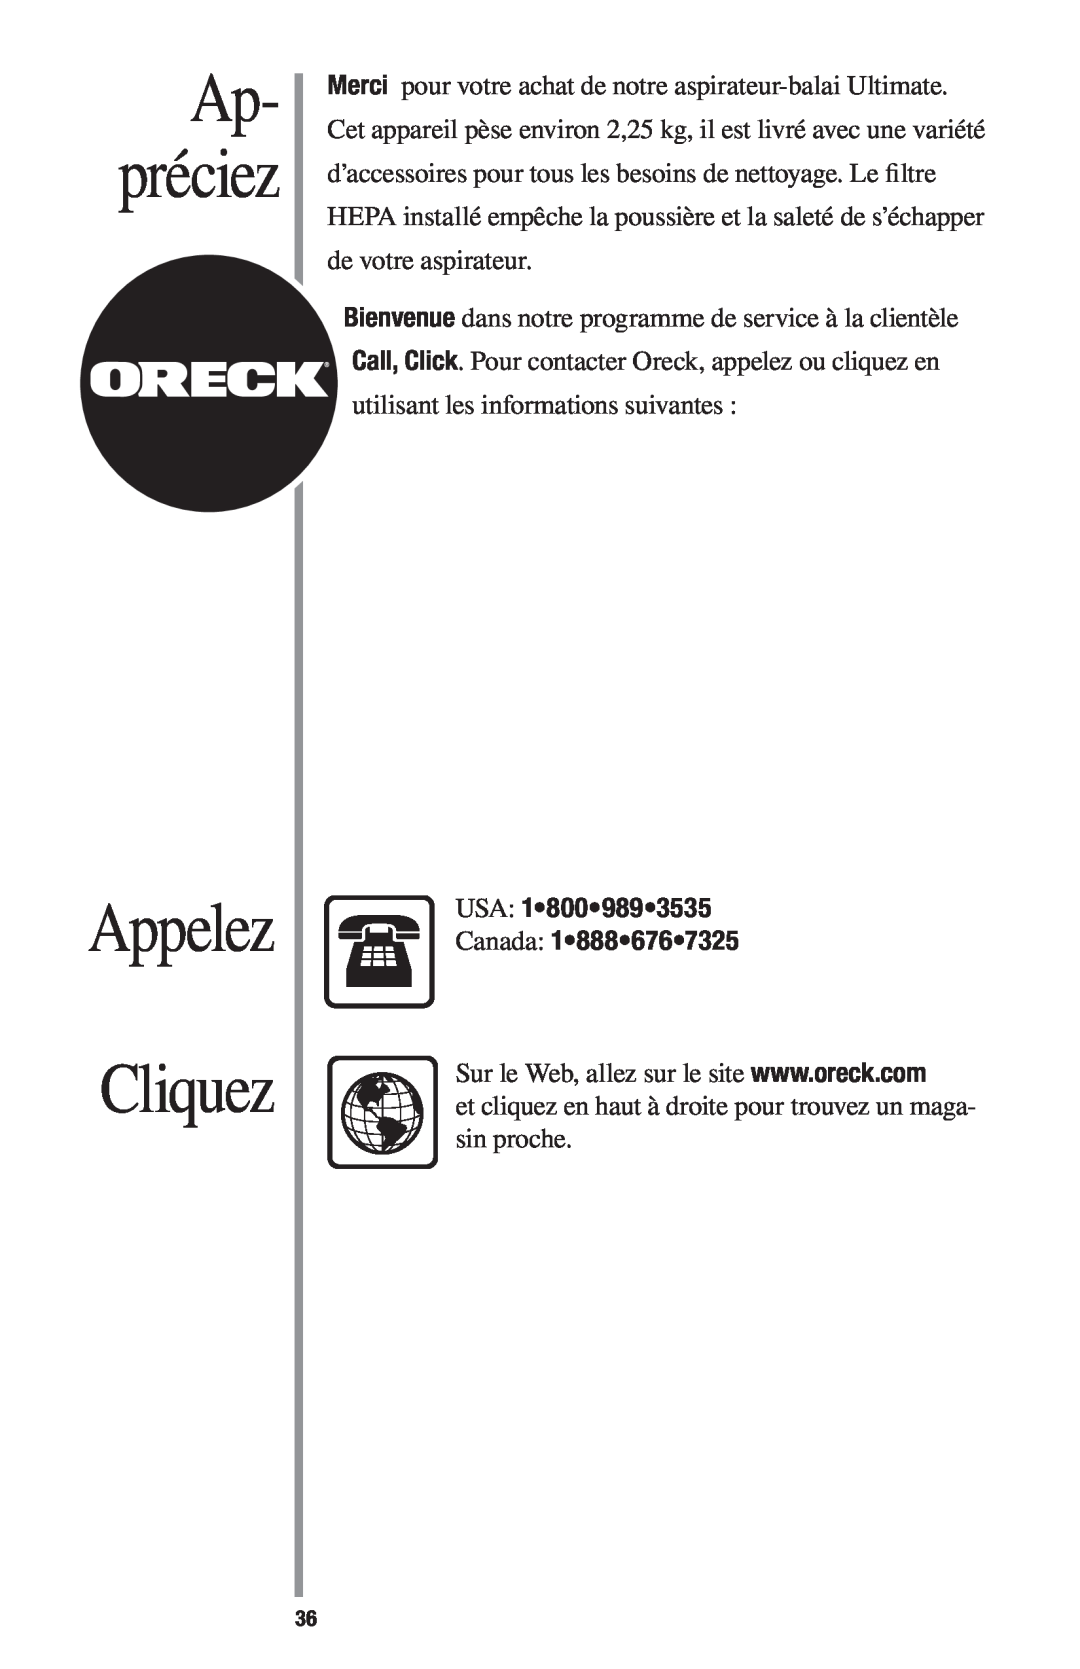 Oreck 1600 manual Cliquez, Appelez, Ap- préciez, USA Canada 